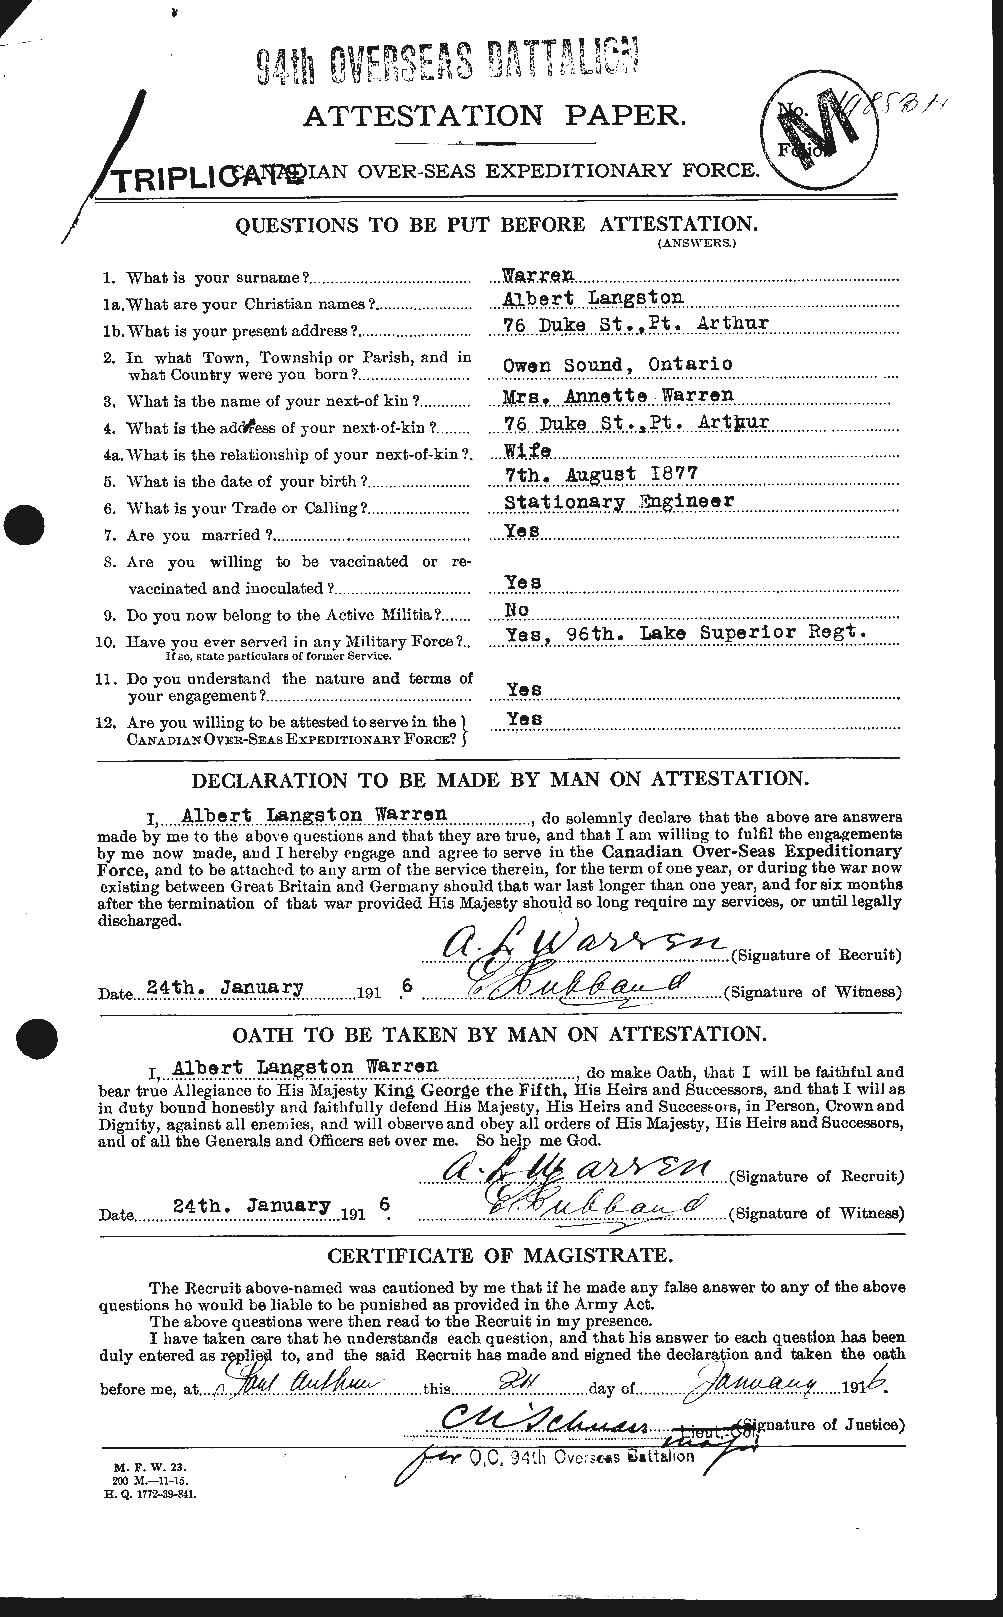 Dossiers du Personnel de la Première Guerre mondiale - CEC 658341a